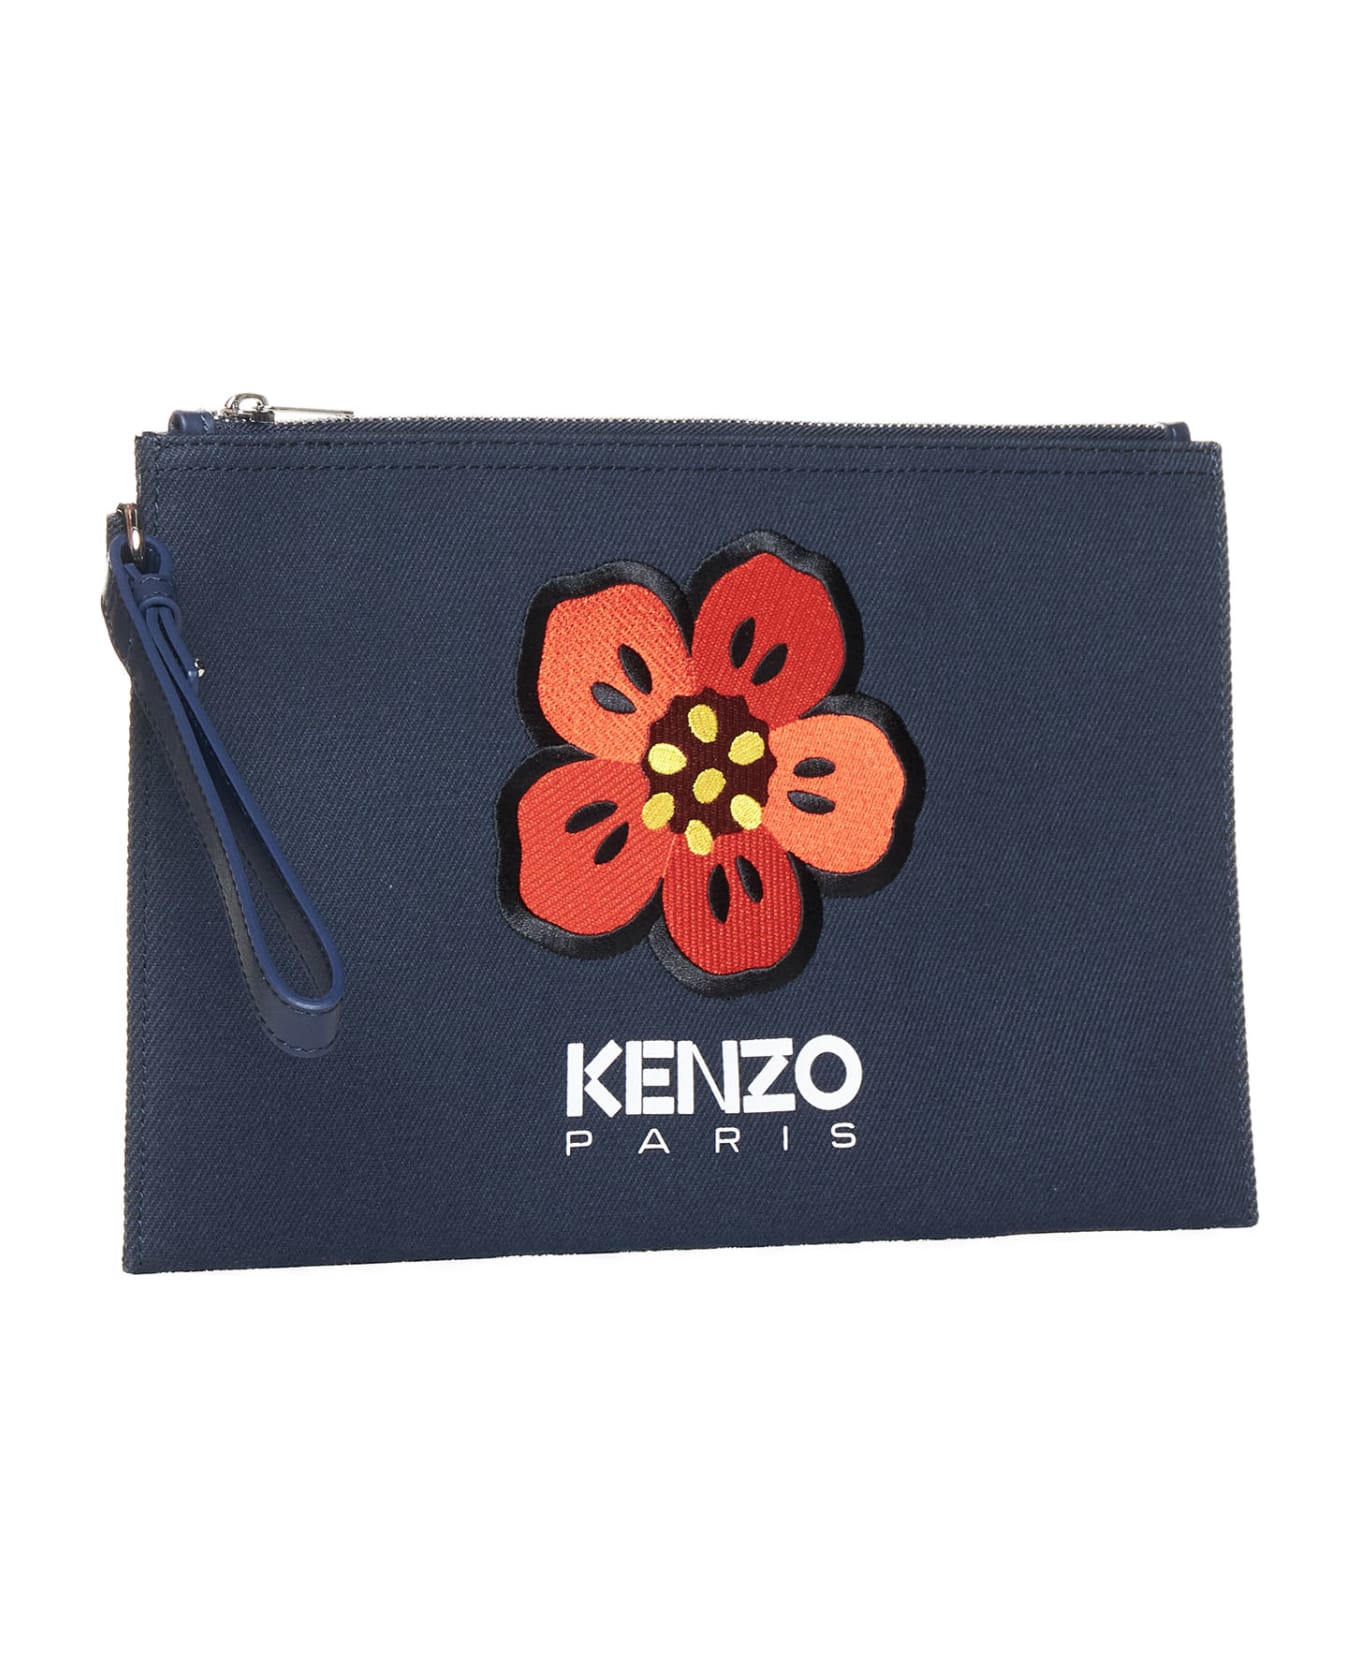 Kenzo Boke Flower Clutch - Navy blue